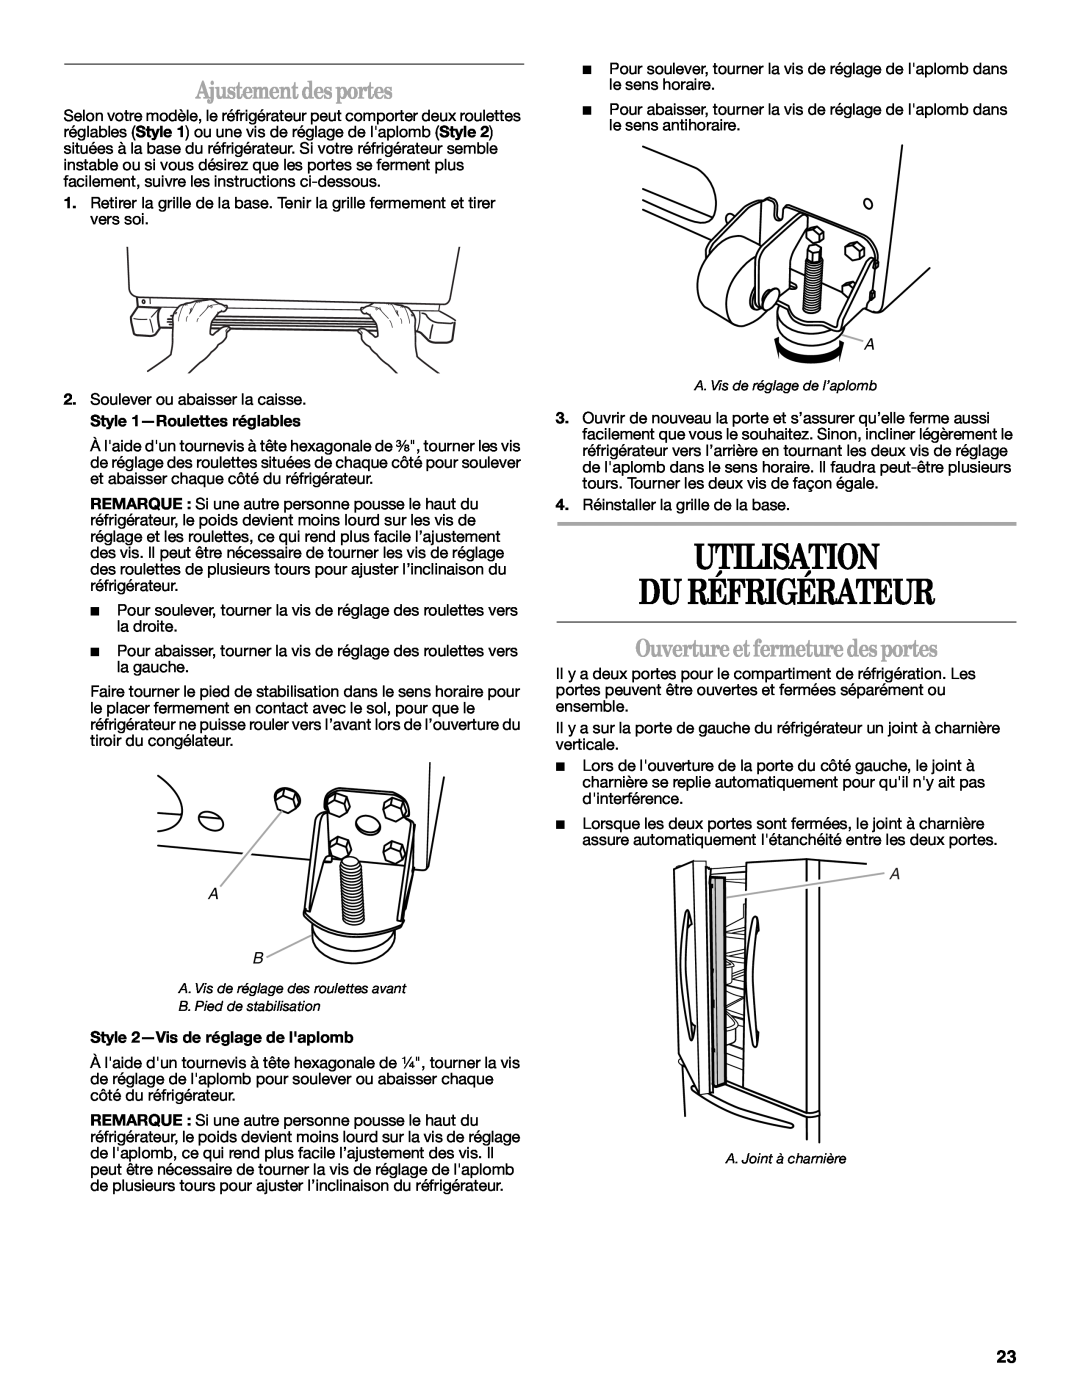 Whirlpool W10215185A Utilisation Du Réfrigérateur, Ajustement desportes, Ouverture et fermeture des portes 